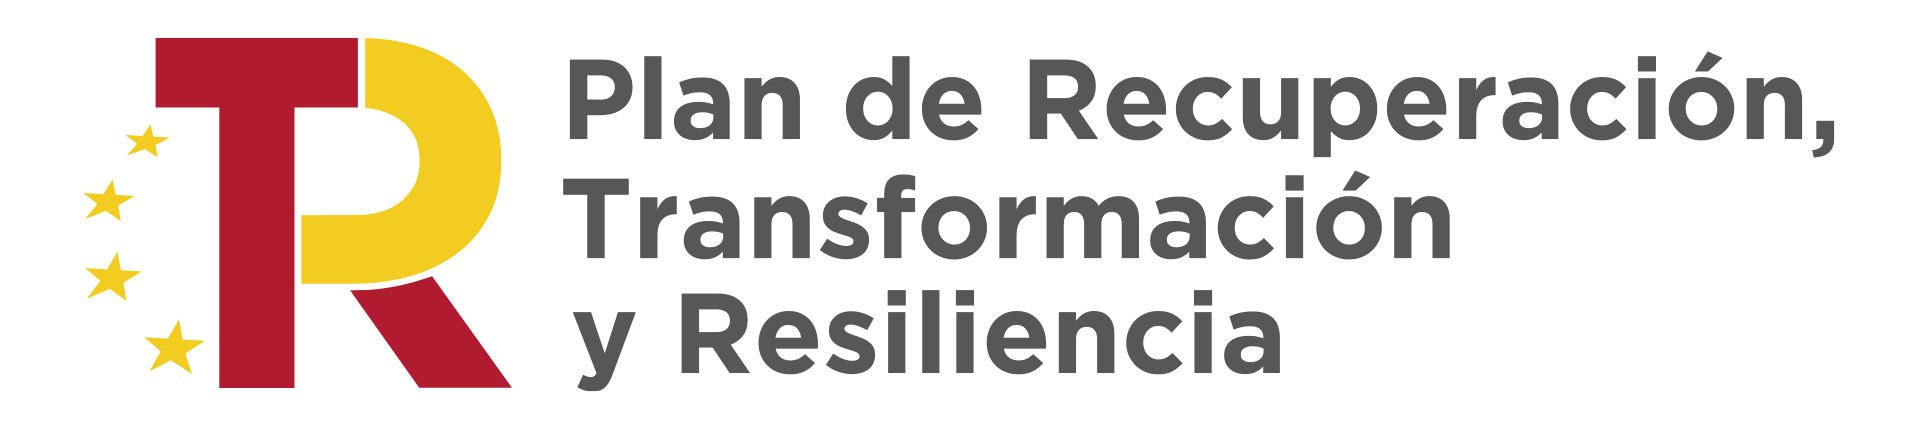 Farmacia Escolano - Plan de recuperación trasformación y resiliencia